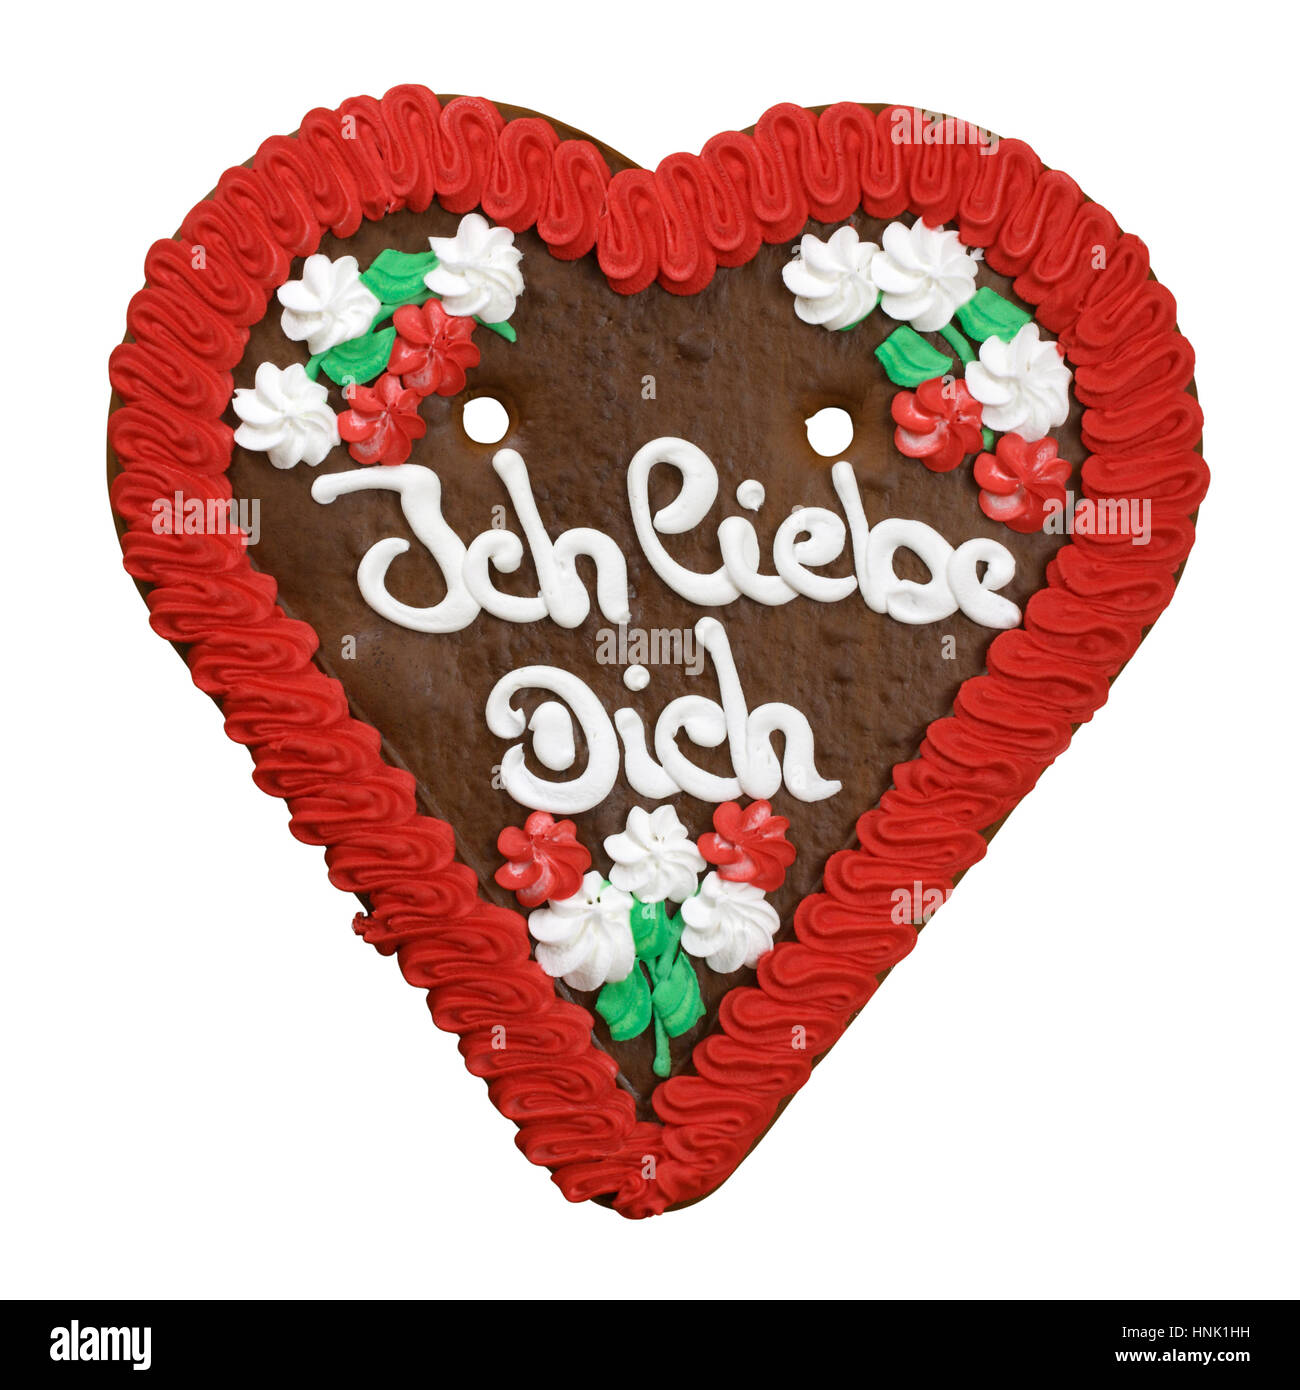 Je vous aime gingerbread cookie. Souvenirs typiques de la culture allemande dans les foires et la célèbre Oktoberfest à Munich. Banque D'Images